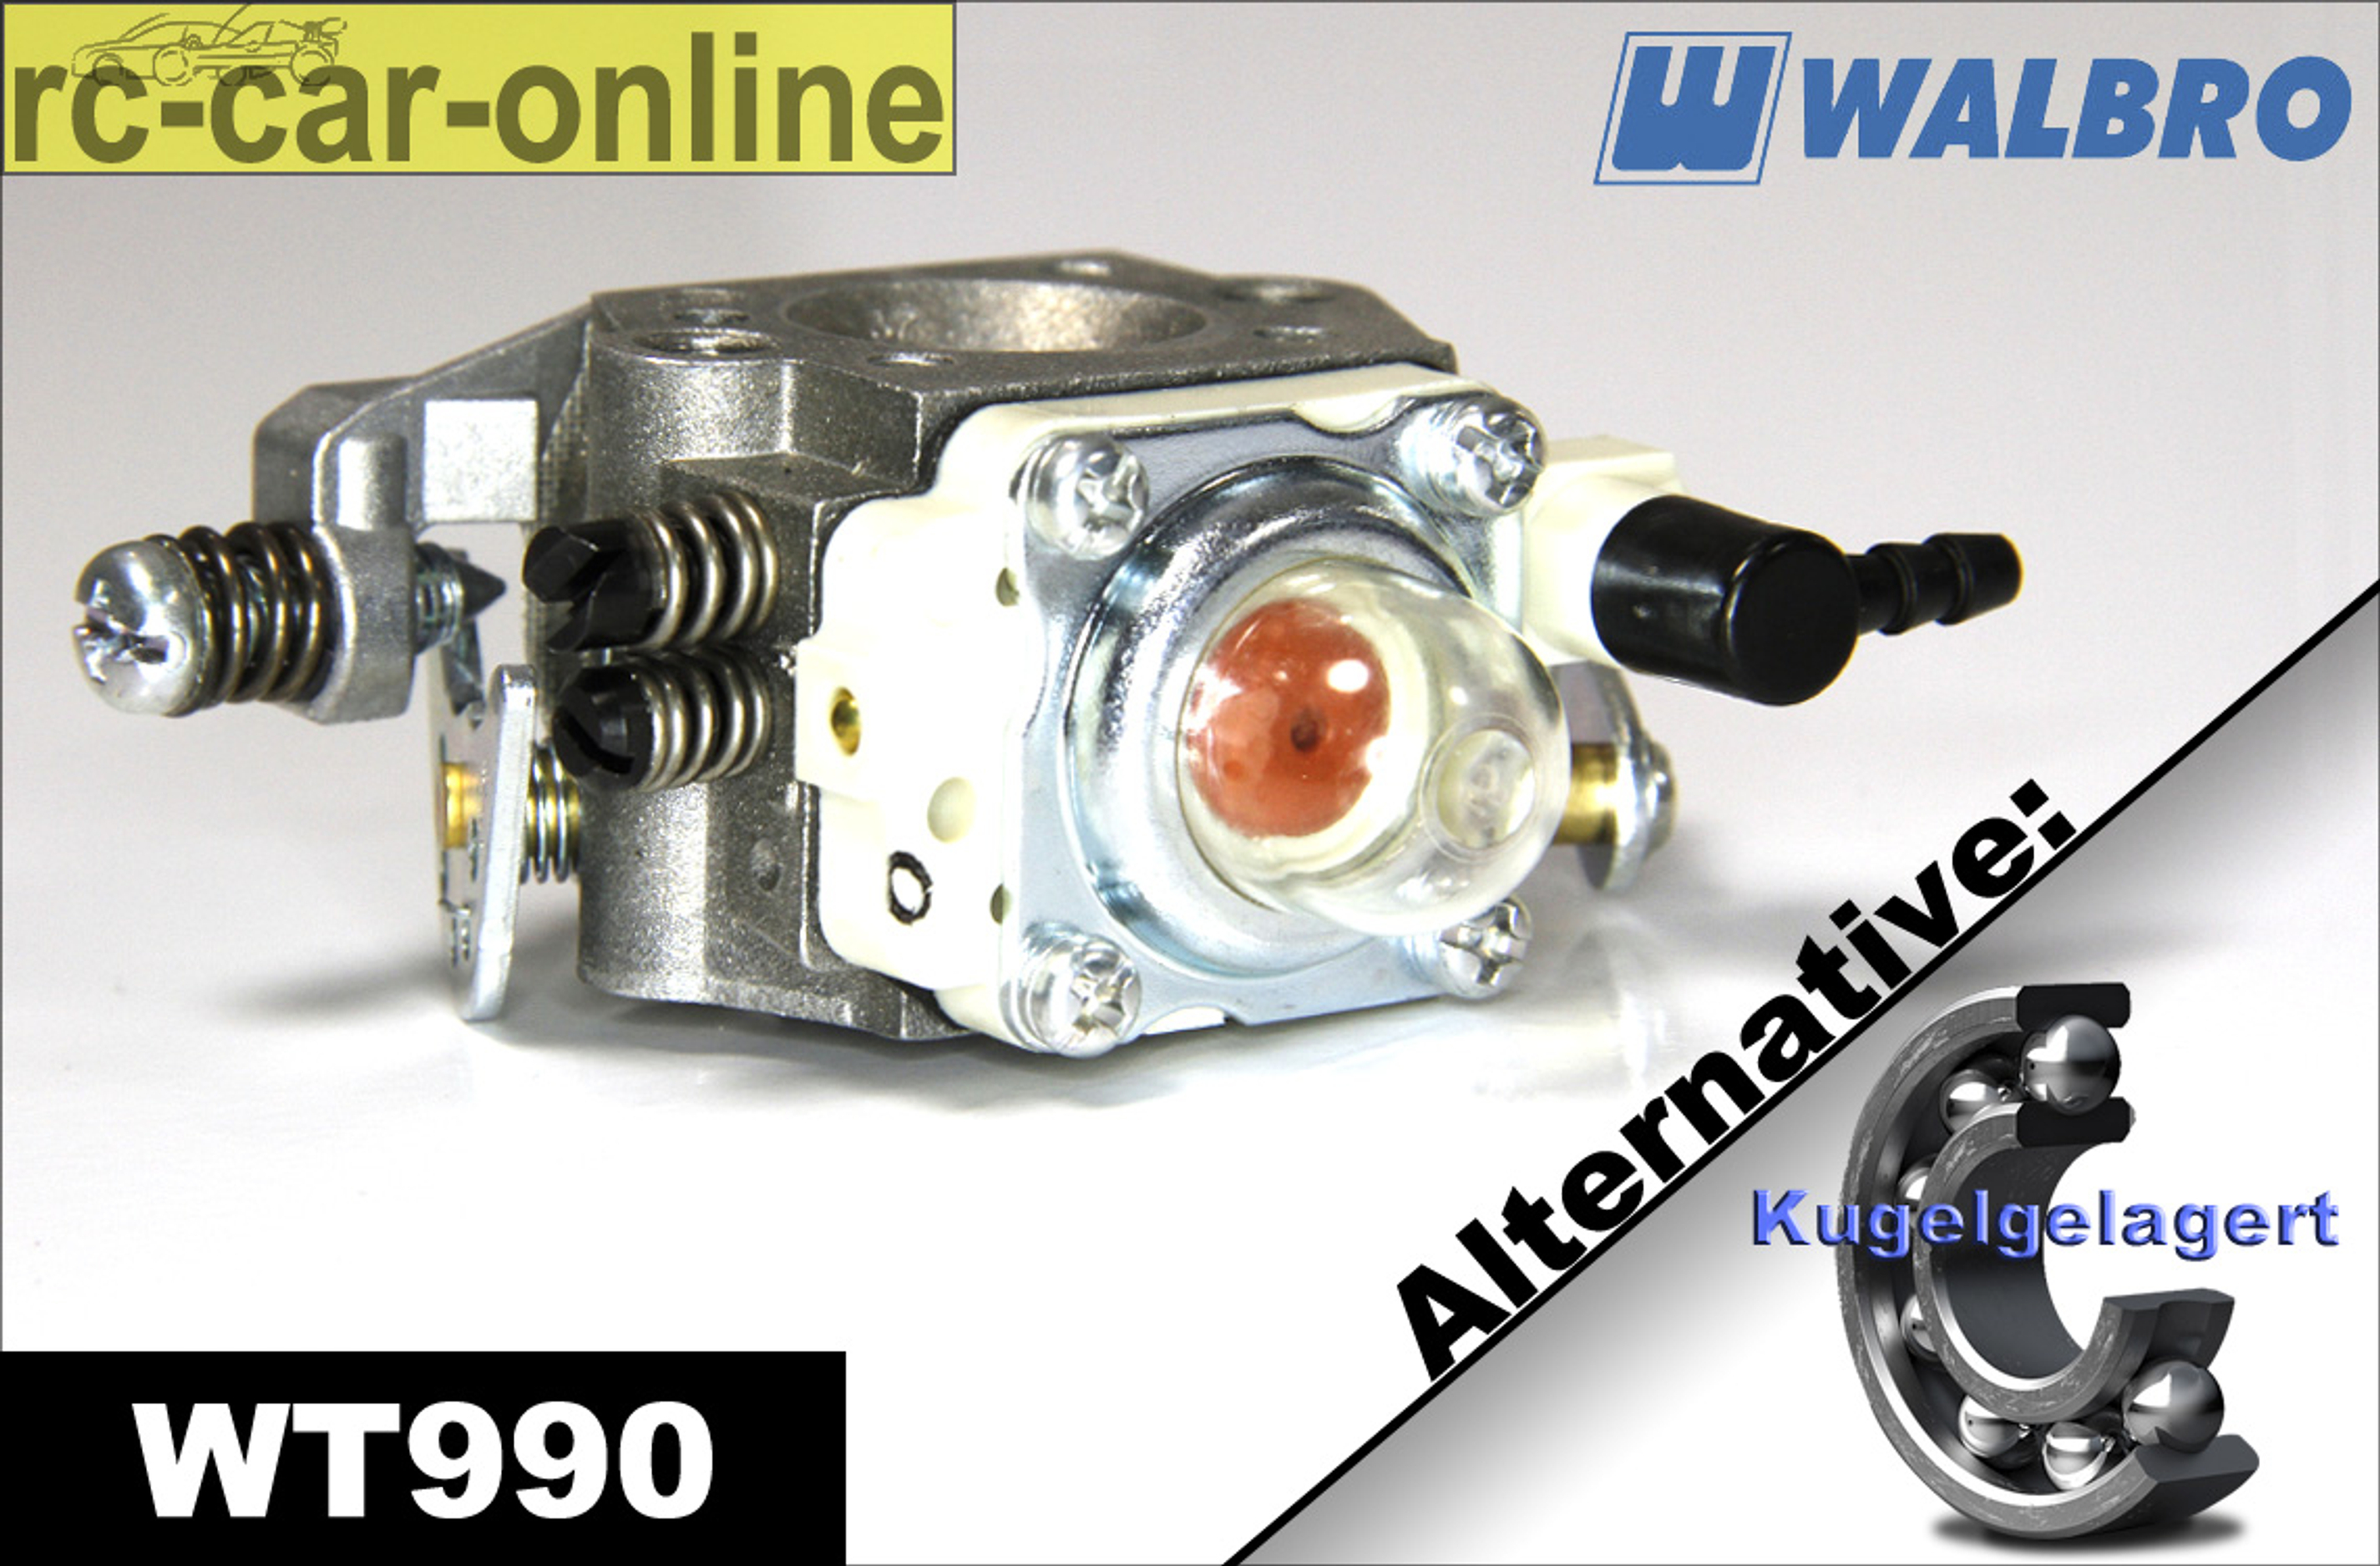 Walbro Vergaser WT 990 normal/kugelgelagert